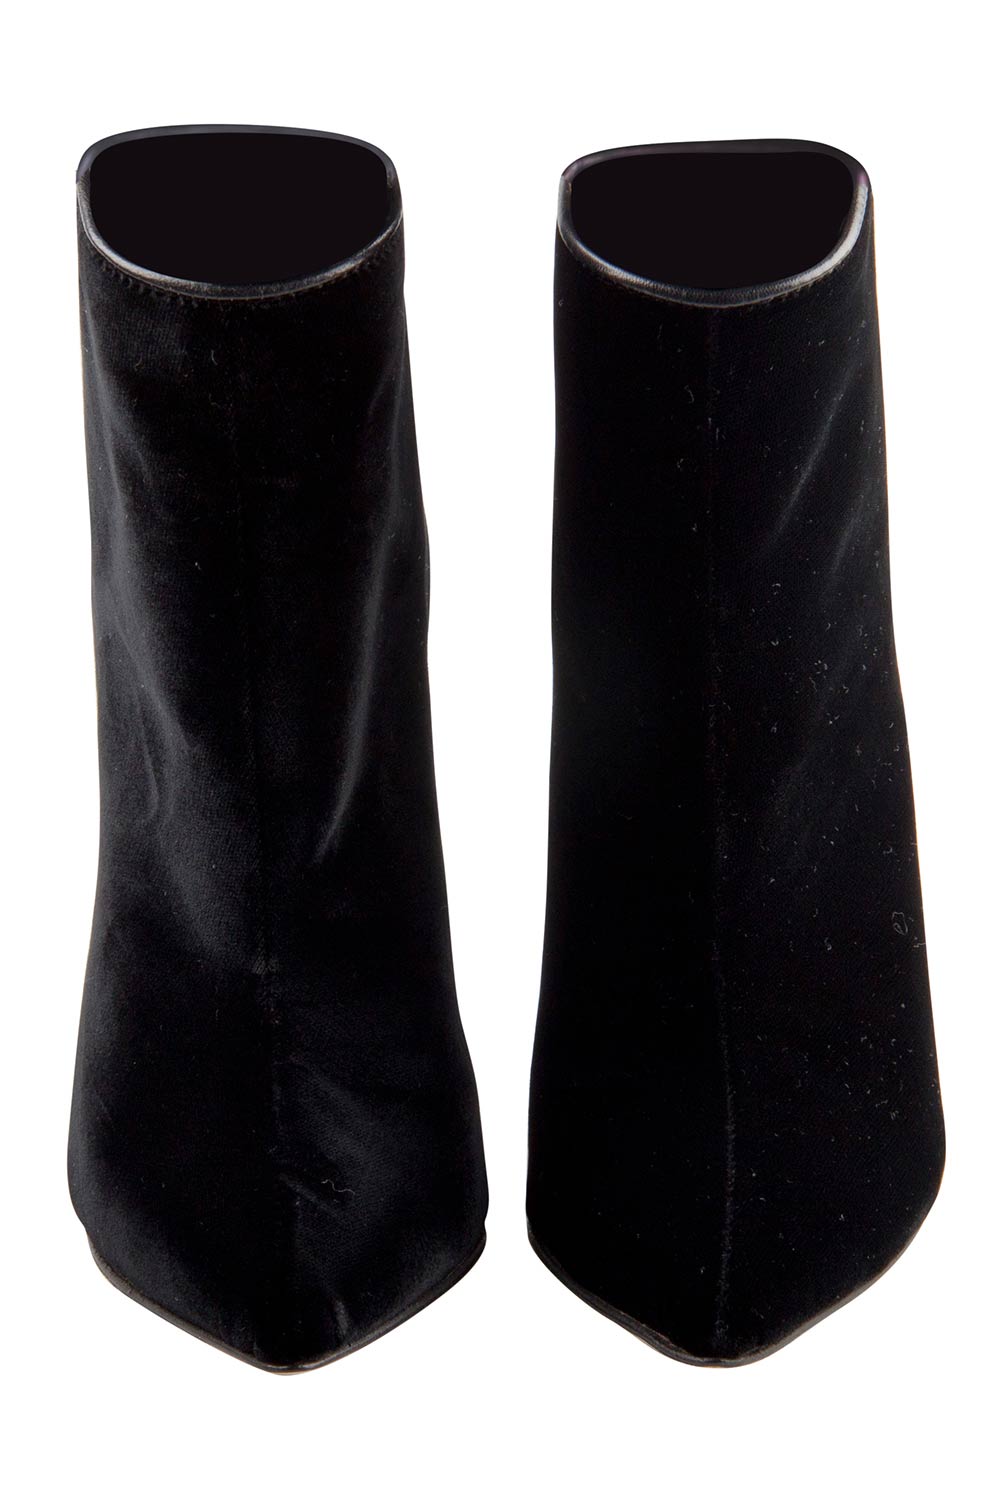 Olcay Gulsen Black Velvet Pointed Toe Ankle Boots Size 37